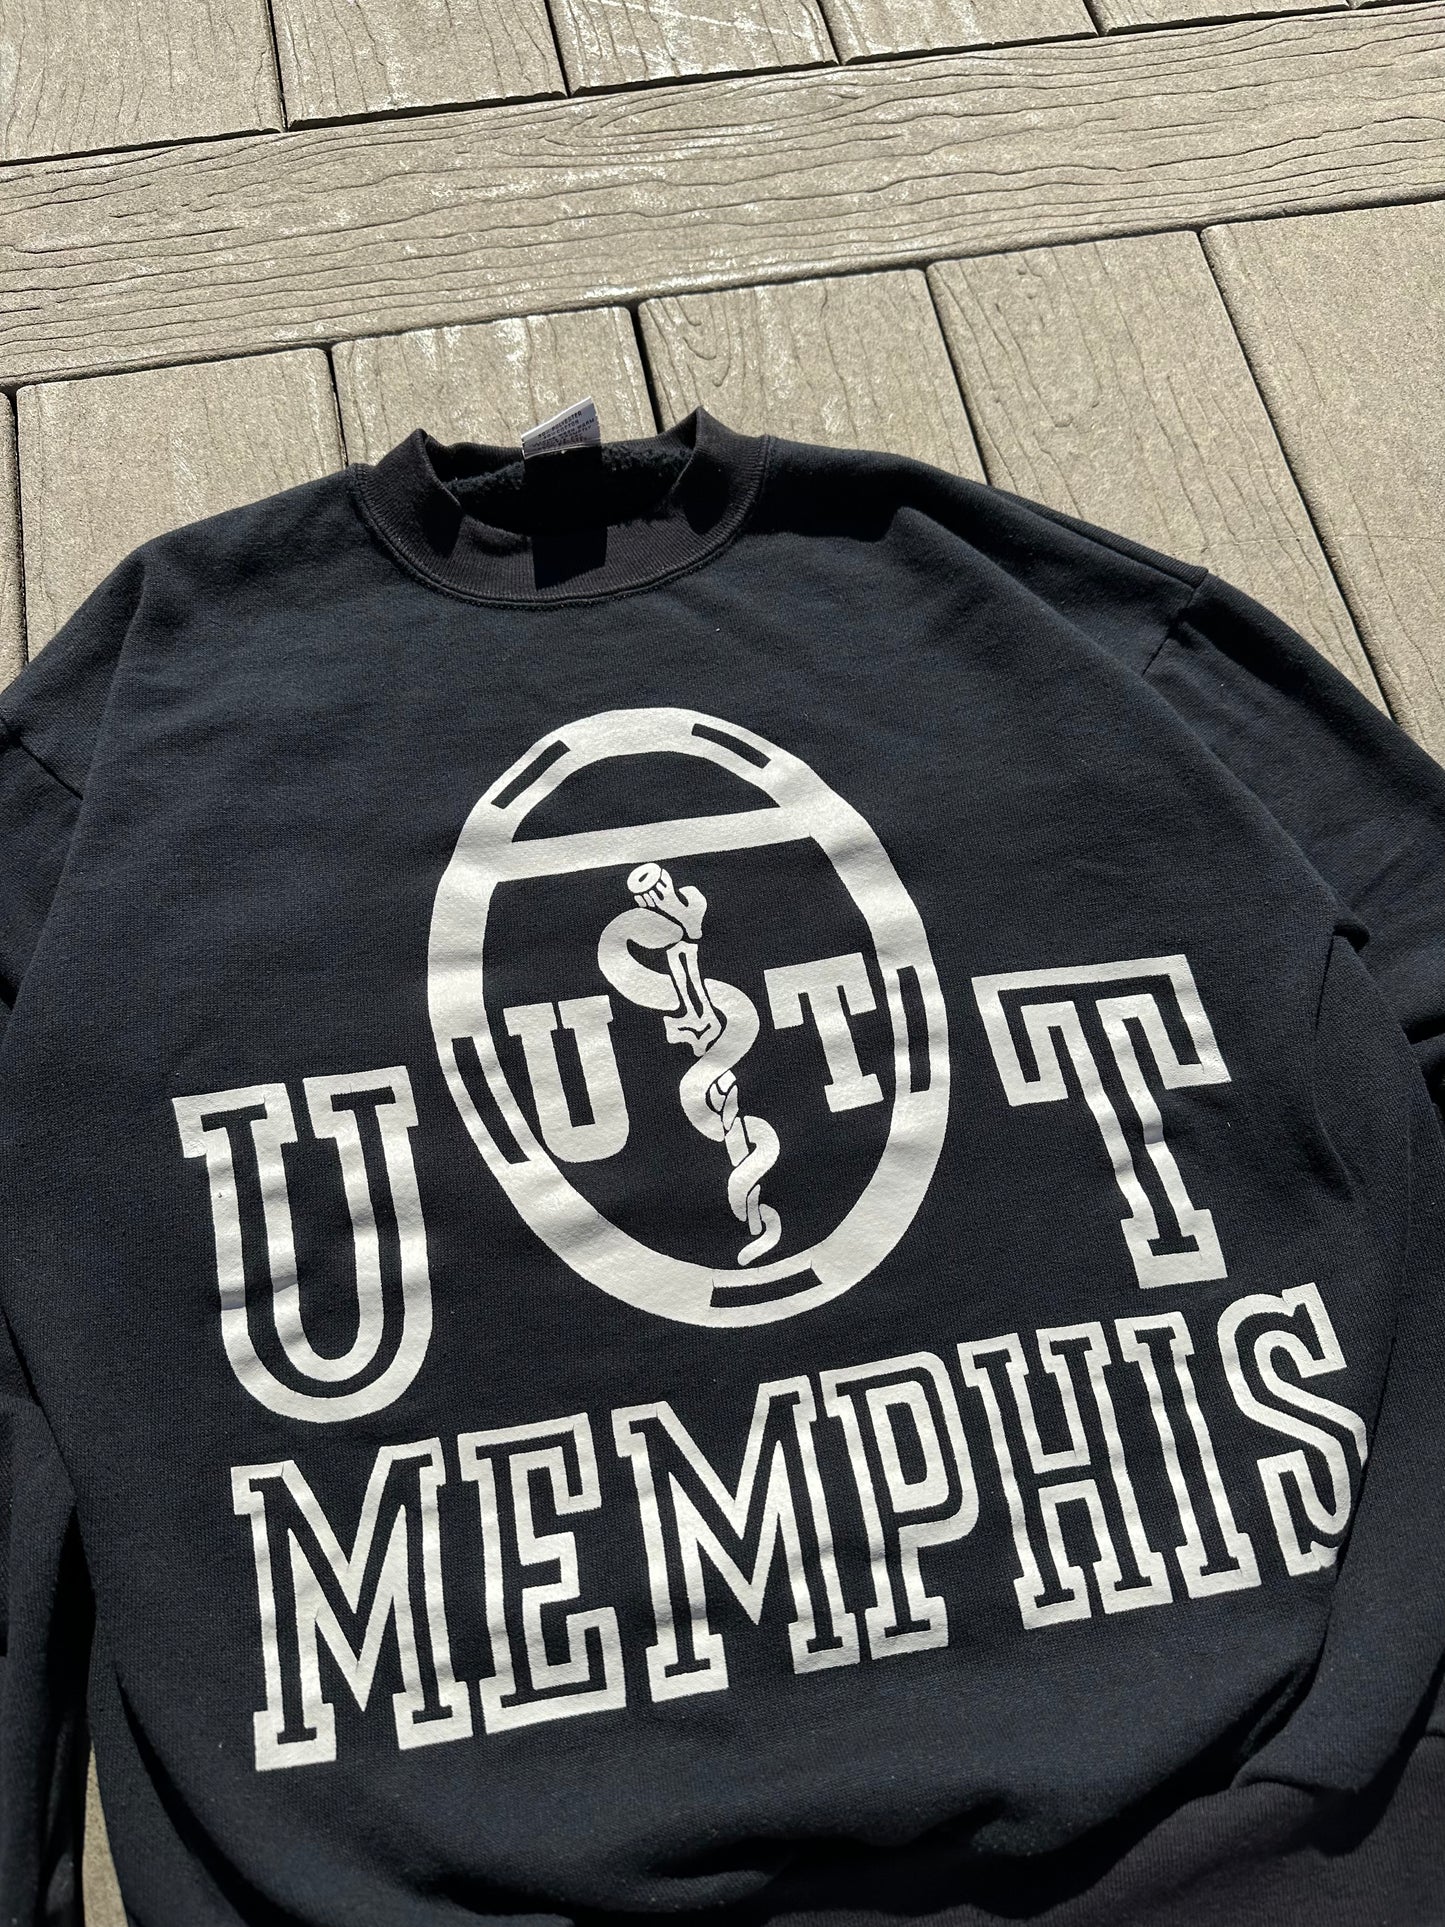 UT Memphis Crewneck- S/M